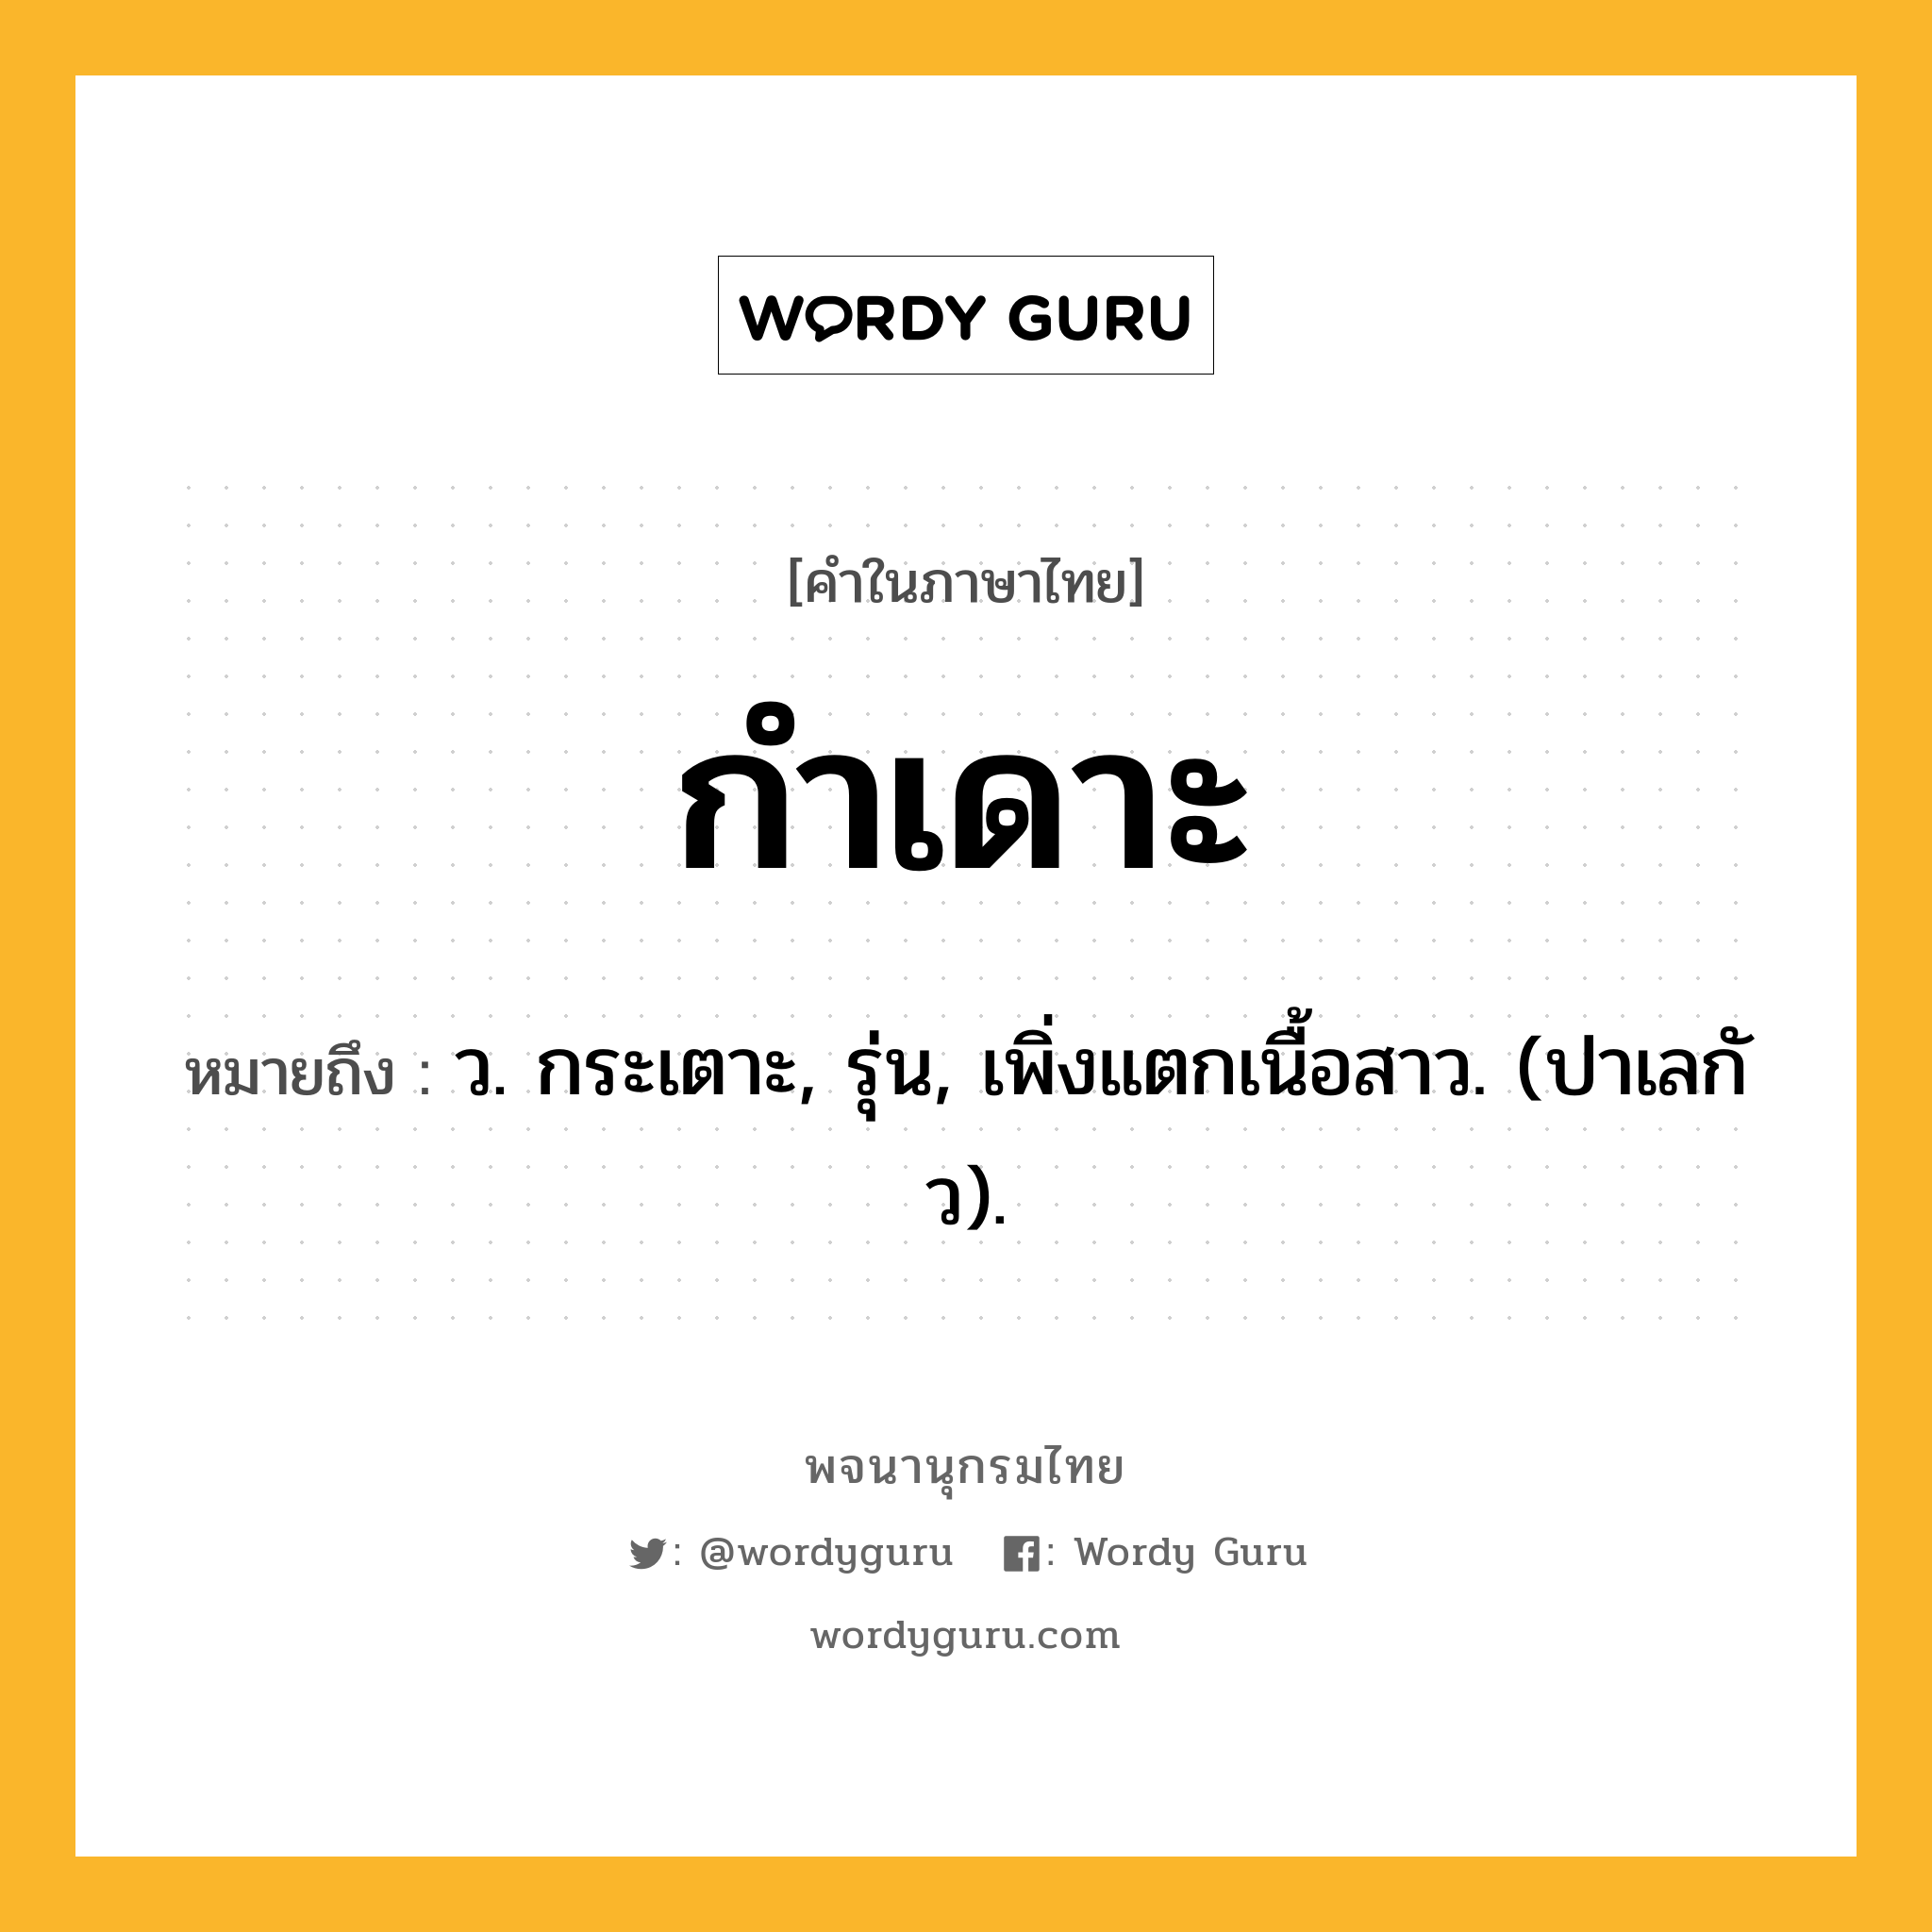 กำเดาะ หมายถึงอะไร?, คำในภาษาไทย กำเดาะ หมายถึง ว. กระเตาะ, รุ่น, เพิ่งแตกเนื้อสาว. (ปาเลกัว).